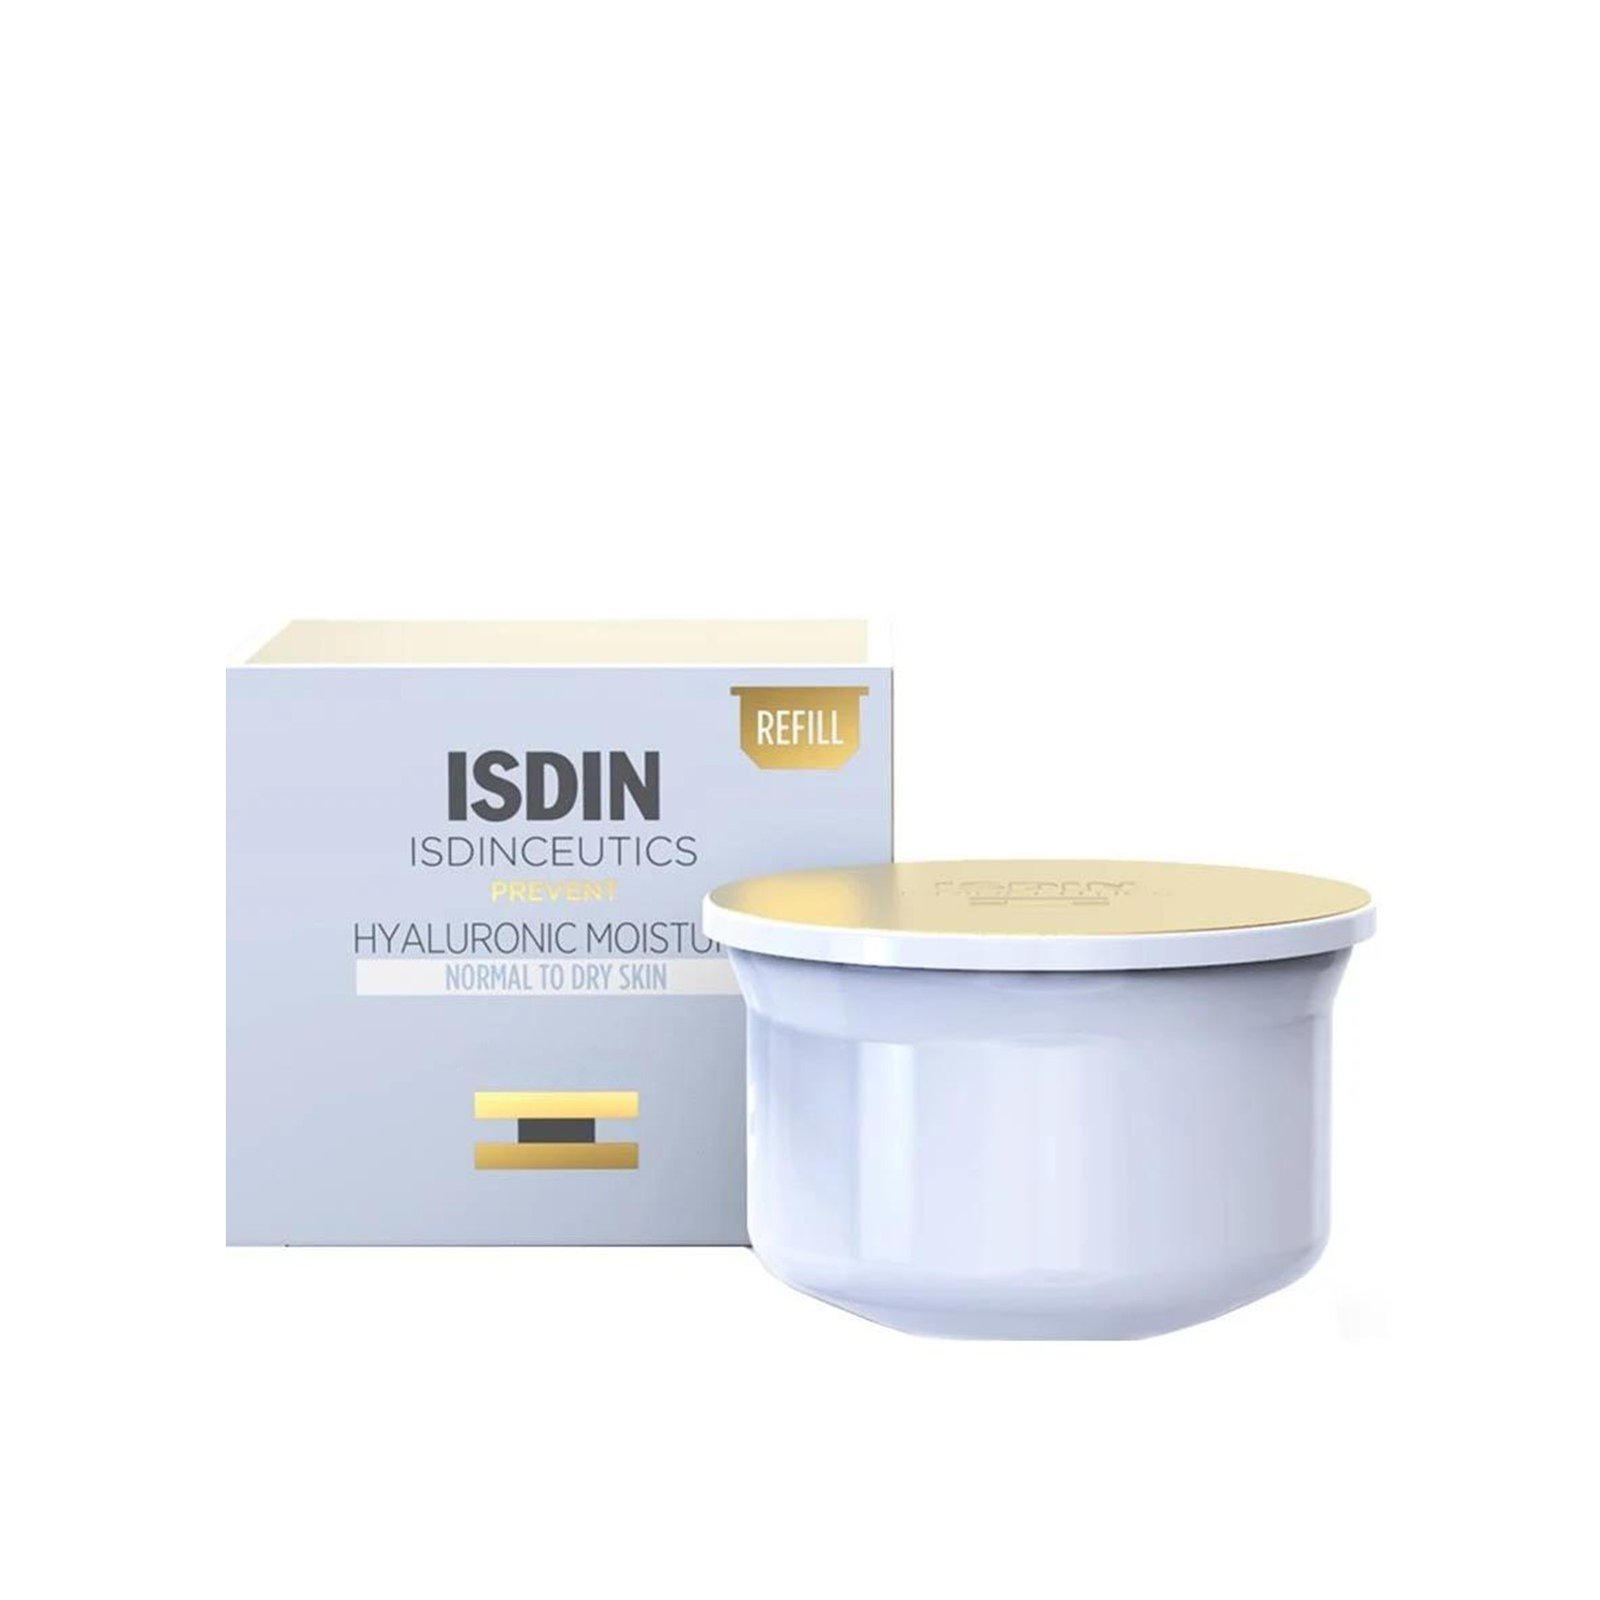 ISDINCEUTICS Hyaluronic Moisture Cream Normal To Dry Skin Refill 50g (1.76 oz)